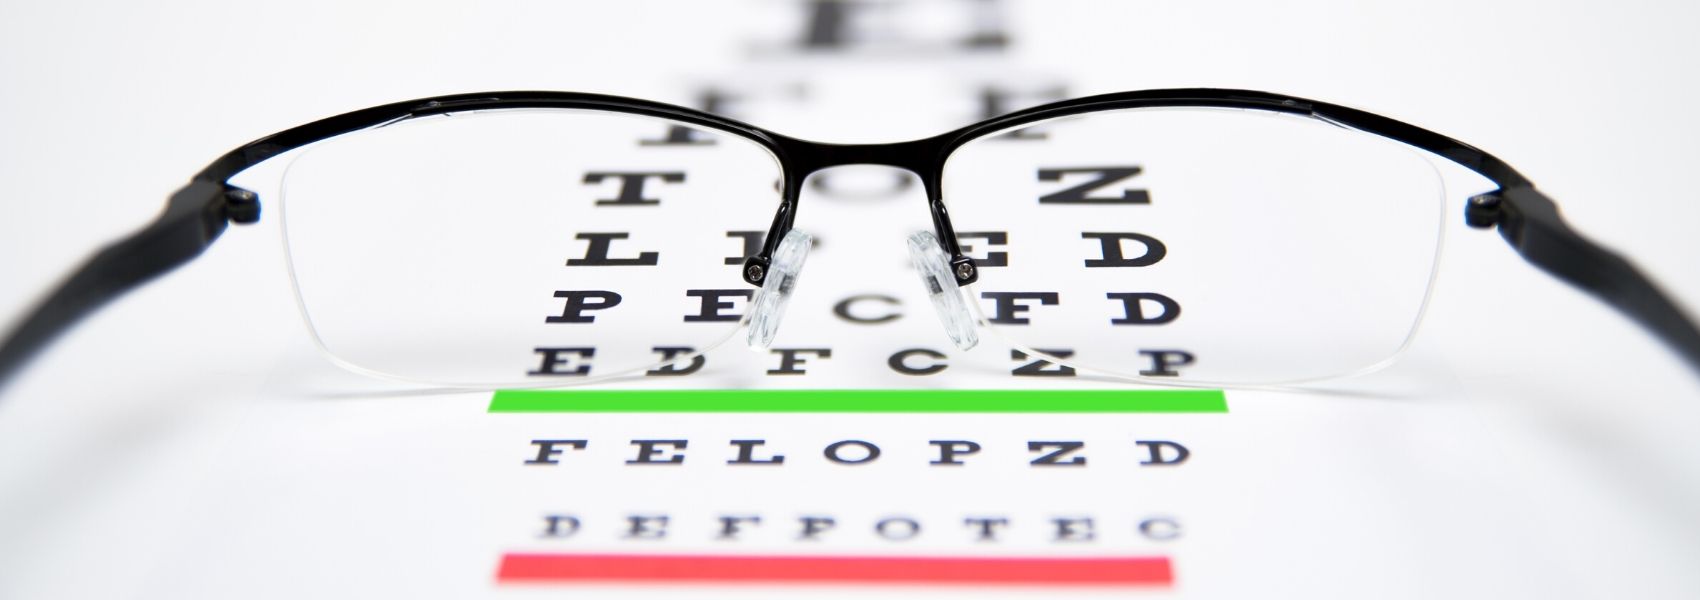 consultas de oftalmologia gratuitas